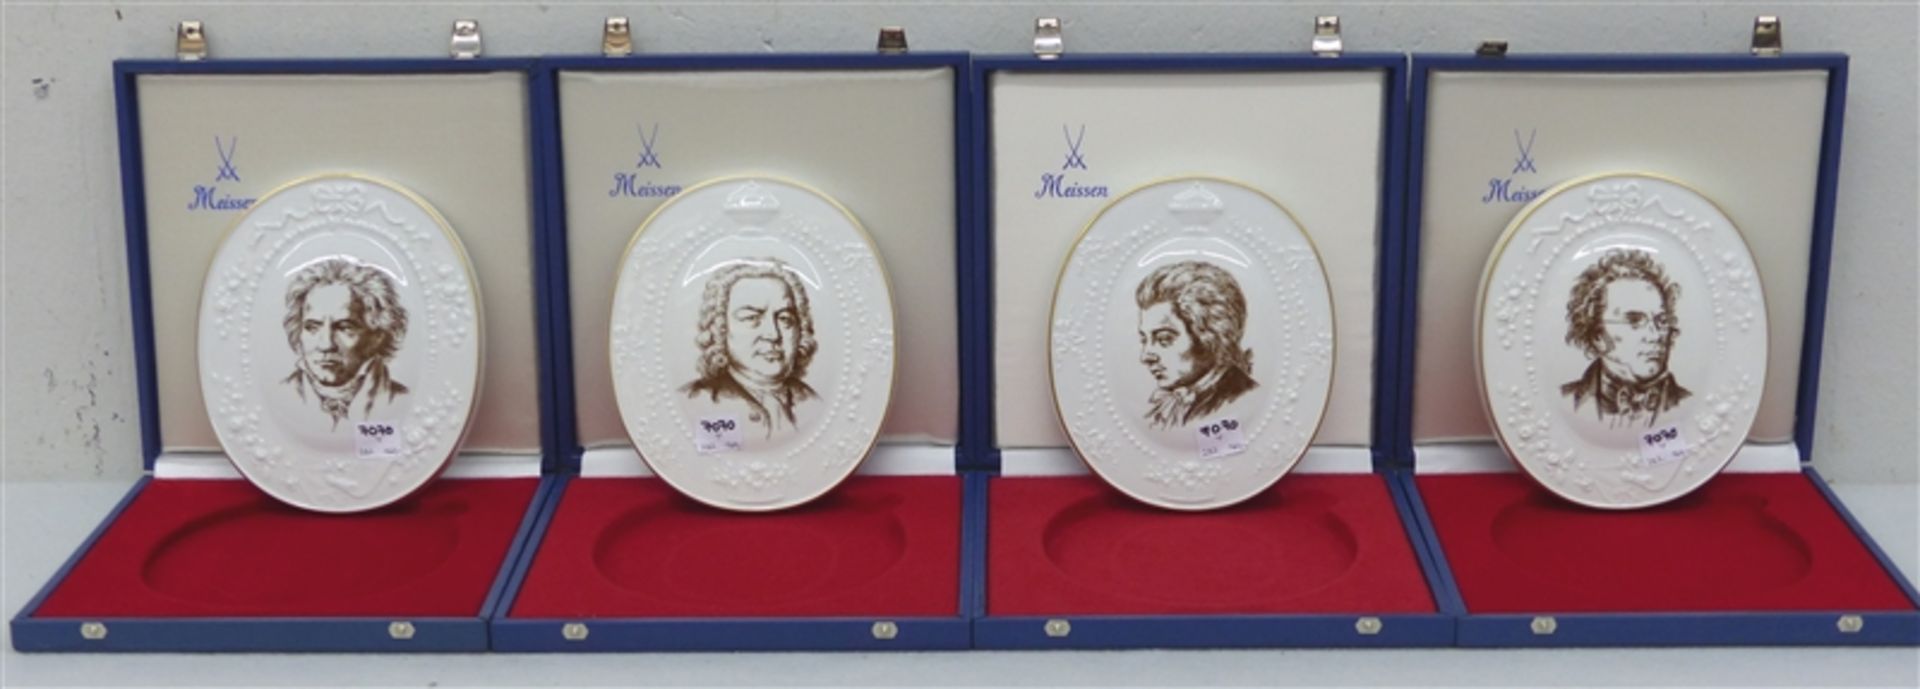 4 Porträt-Medaillons Porzellan, Darstellungen von Johann Sebastian Bach, Ludwig van Beethoven,